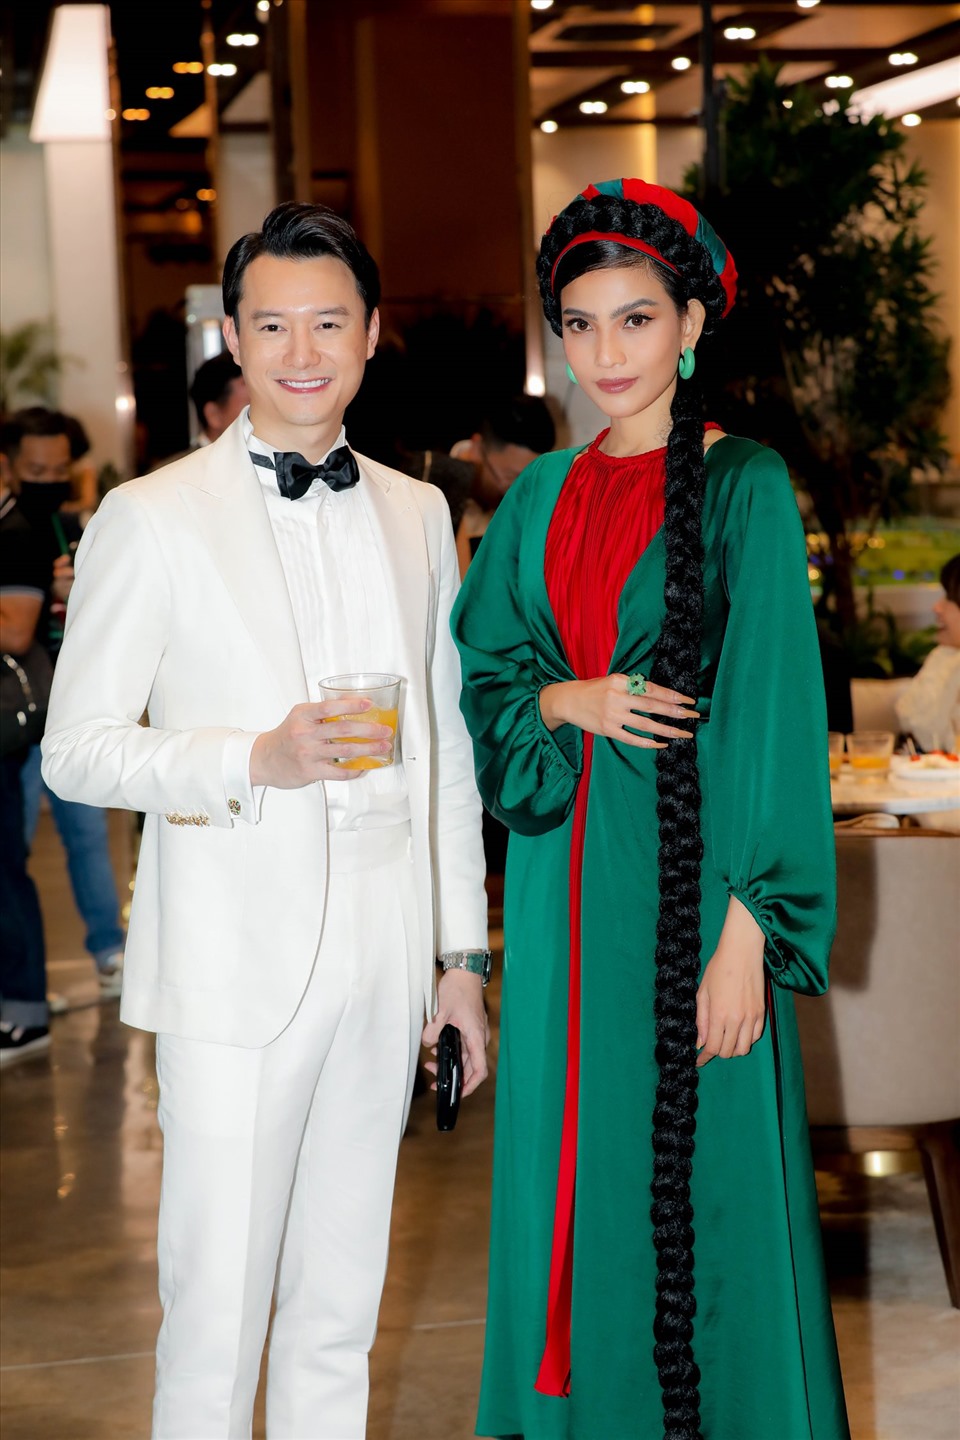 Trương Thị May cho biết: “May rất cảm ơn nhà thiết kế Adrian Anh Tuấn đã chọn cho May bộ trang phục thật đẹp và đậm chất truyền thống. May càng vui hơn khi được mẹ chăm chút và tạo hình đặc biệt cho sự kiện này….”.